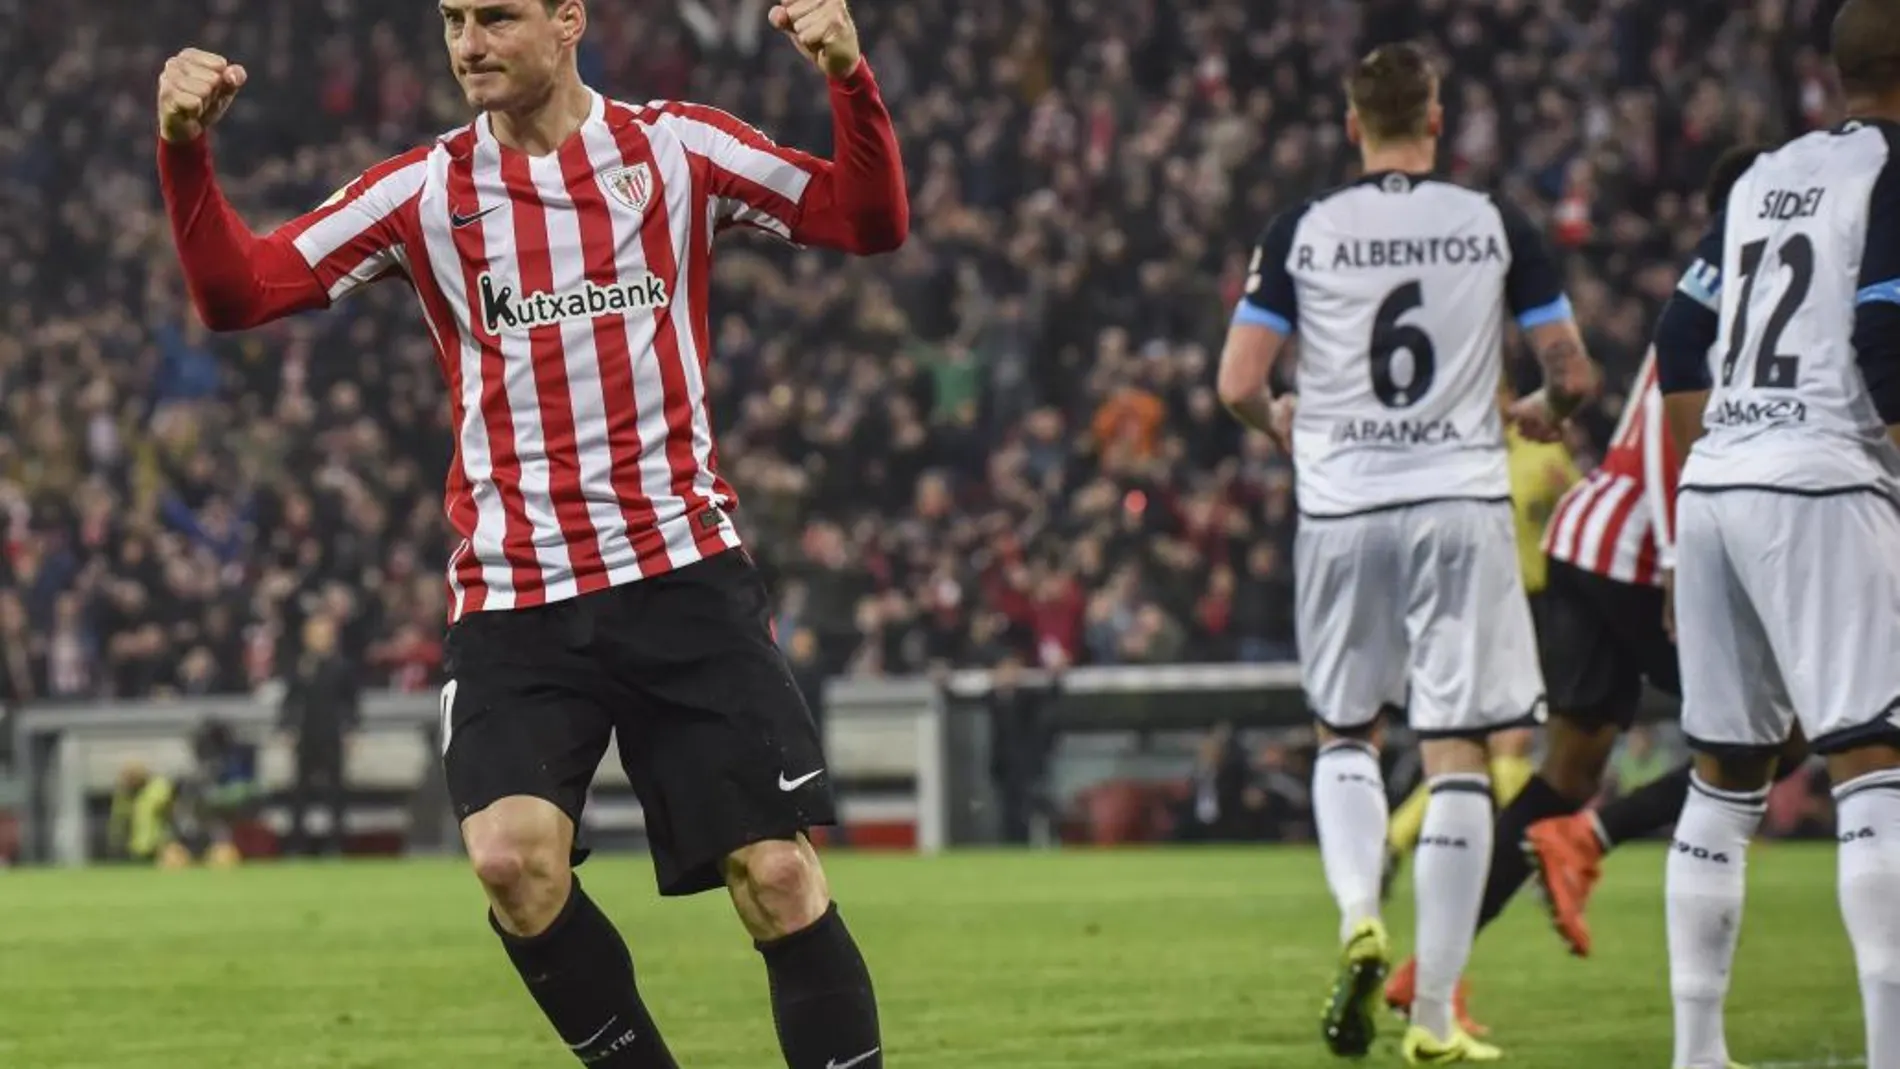 El delantero del Athletic de Bilbao, Aritz Aduriz, celebra su gol ante el Deportivo de La Coruña